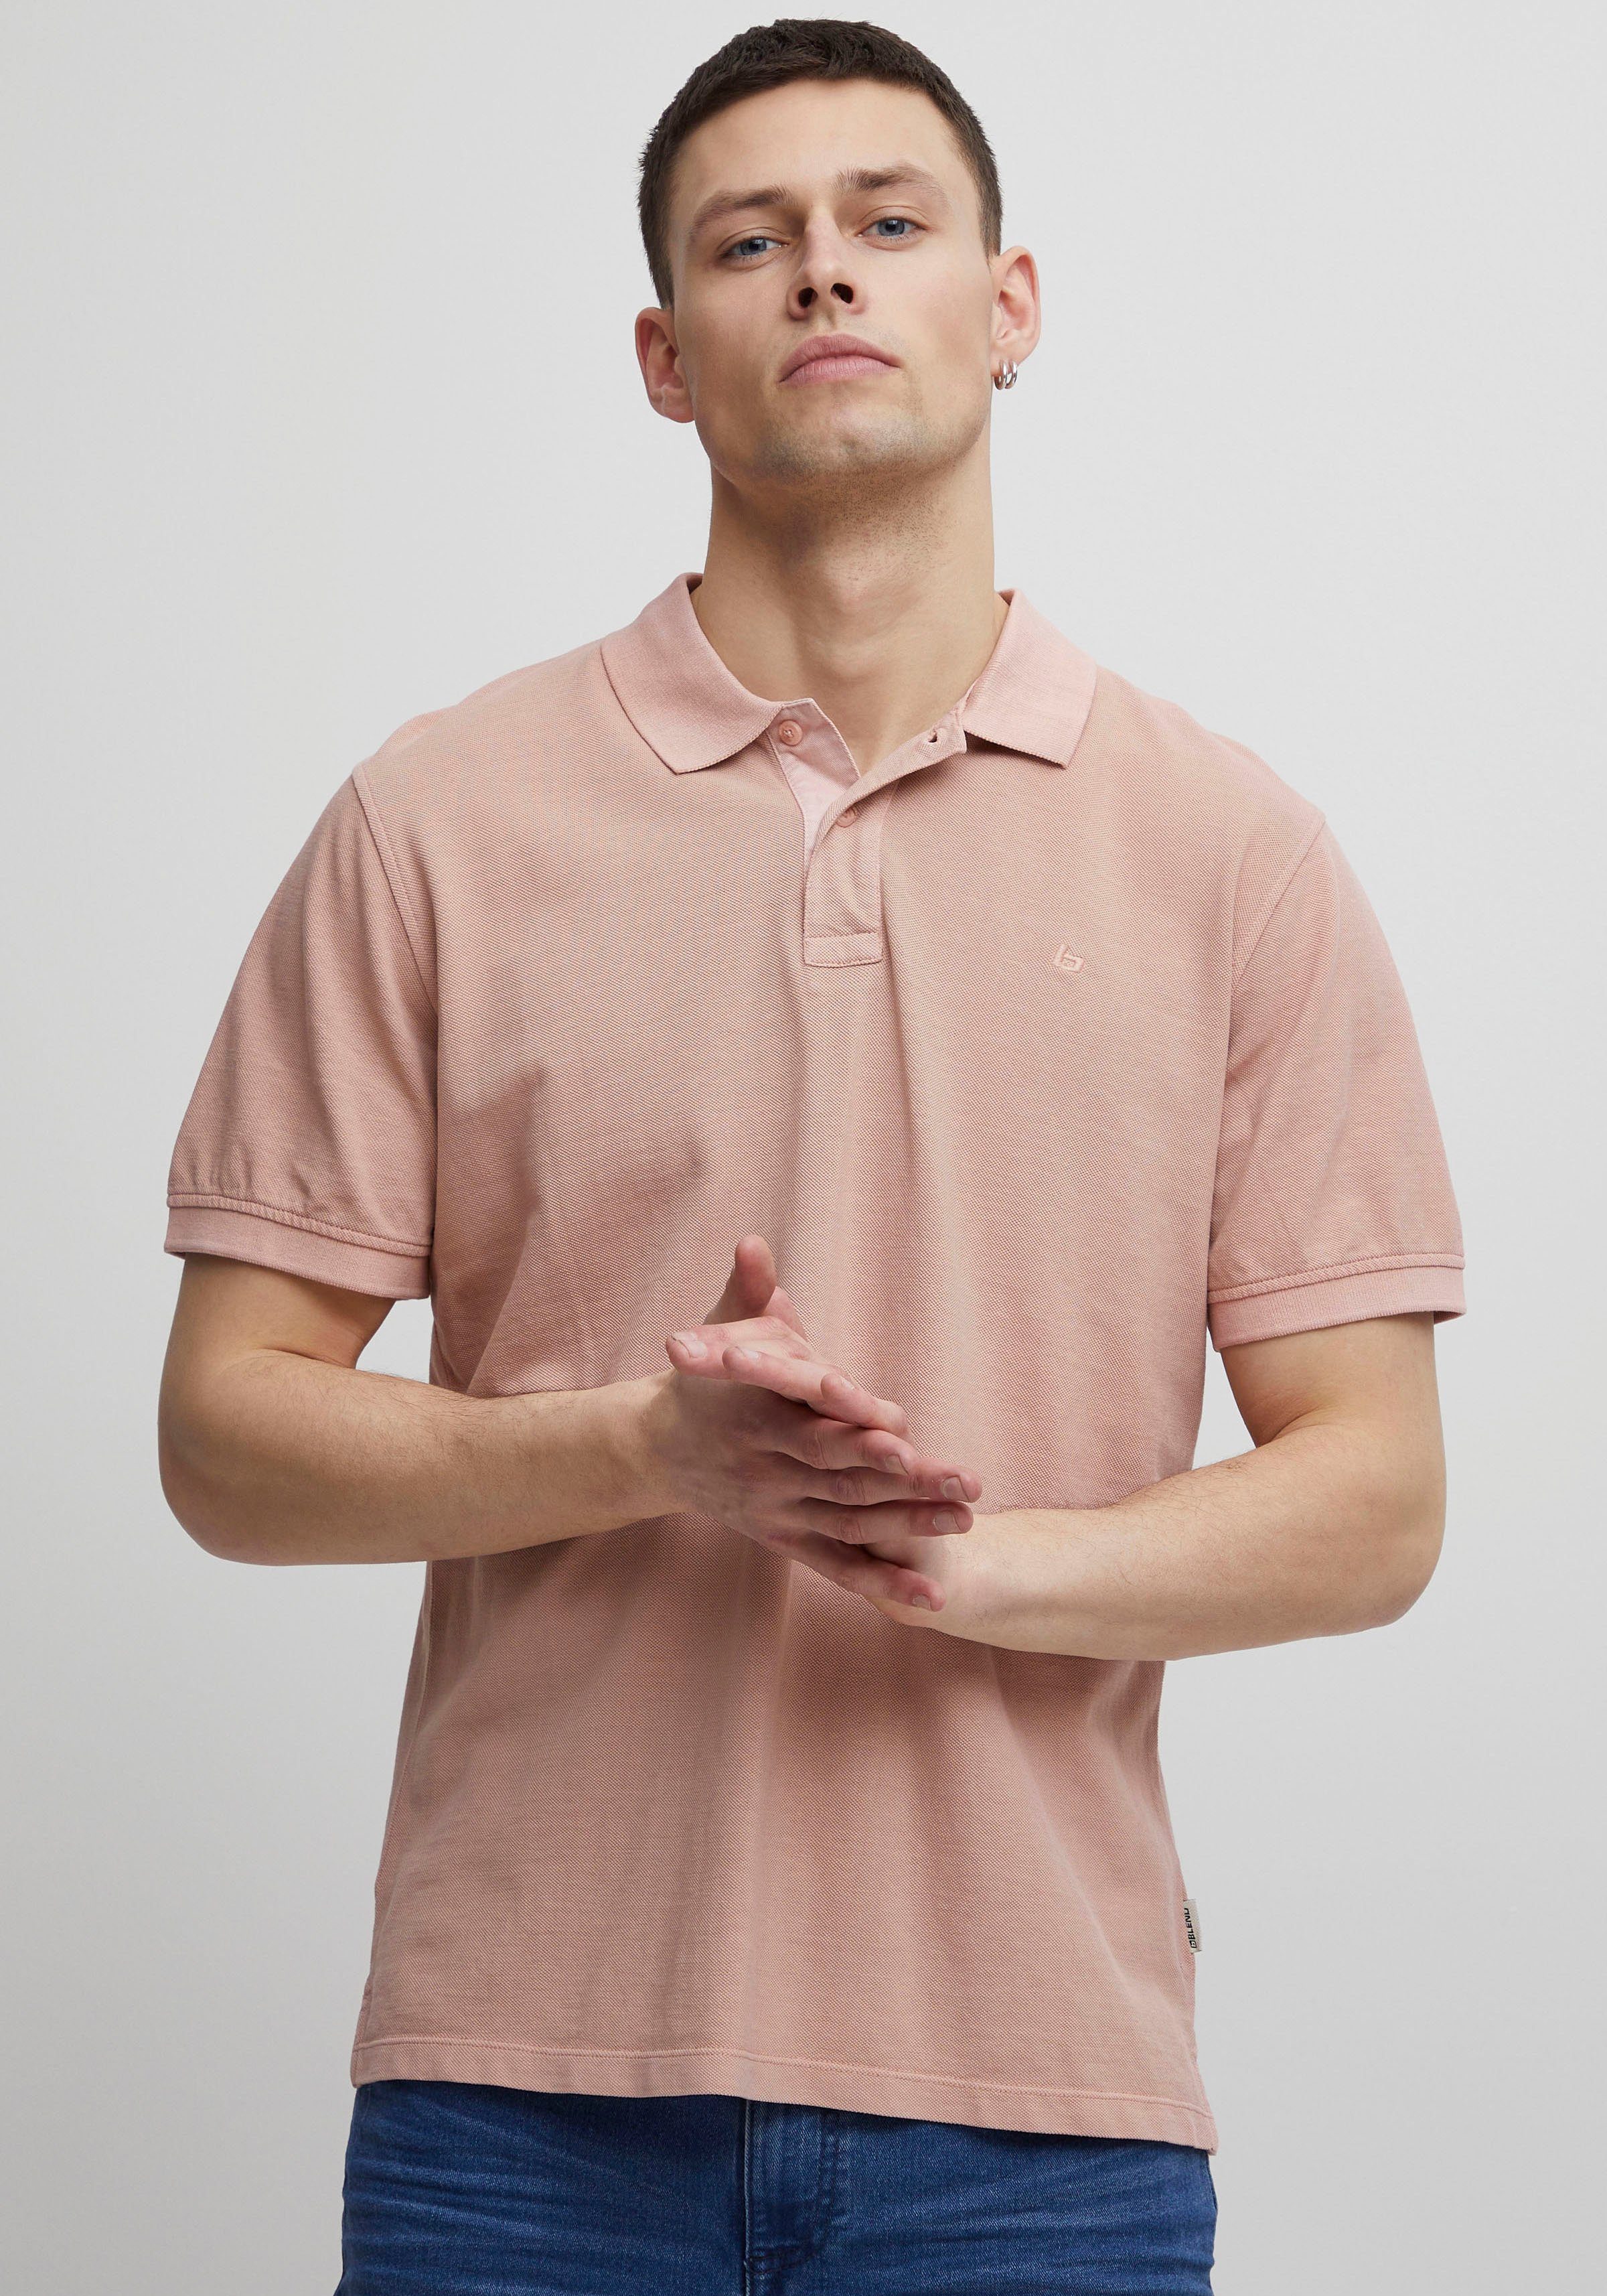 BL-Poloshirt pink Blend Poloshirt